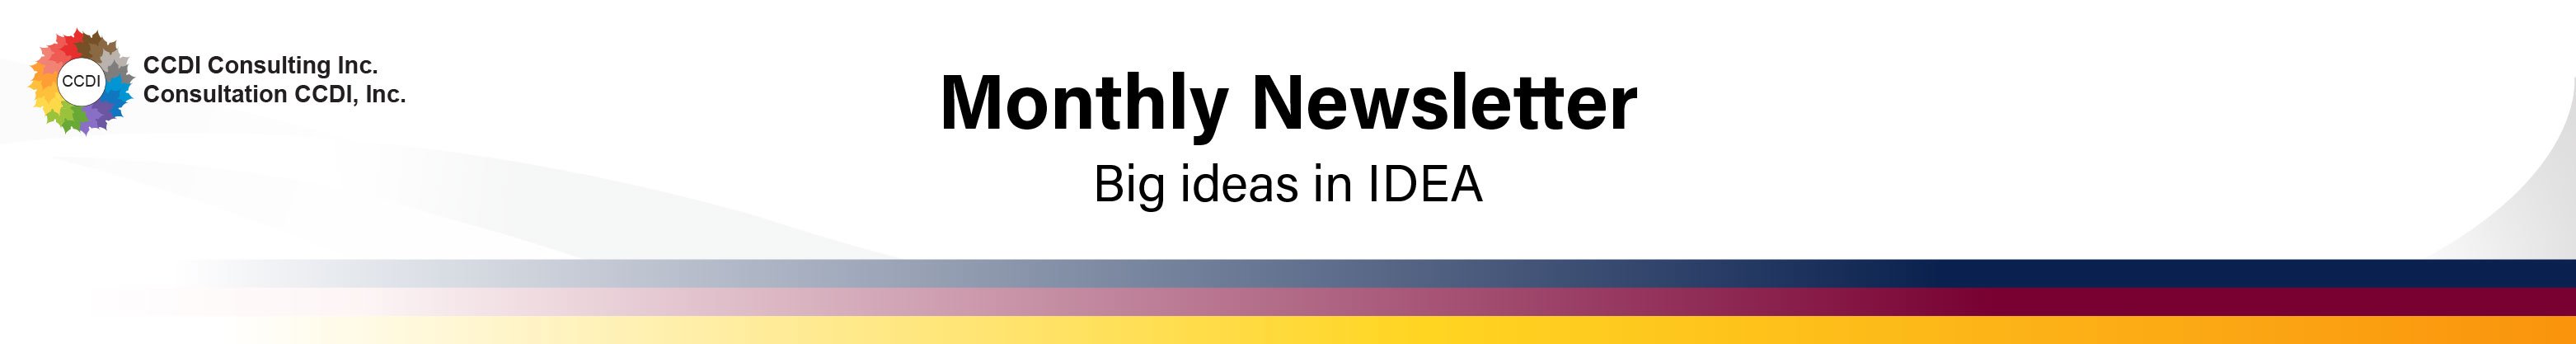 Big Ideas in IDEA (2)